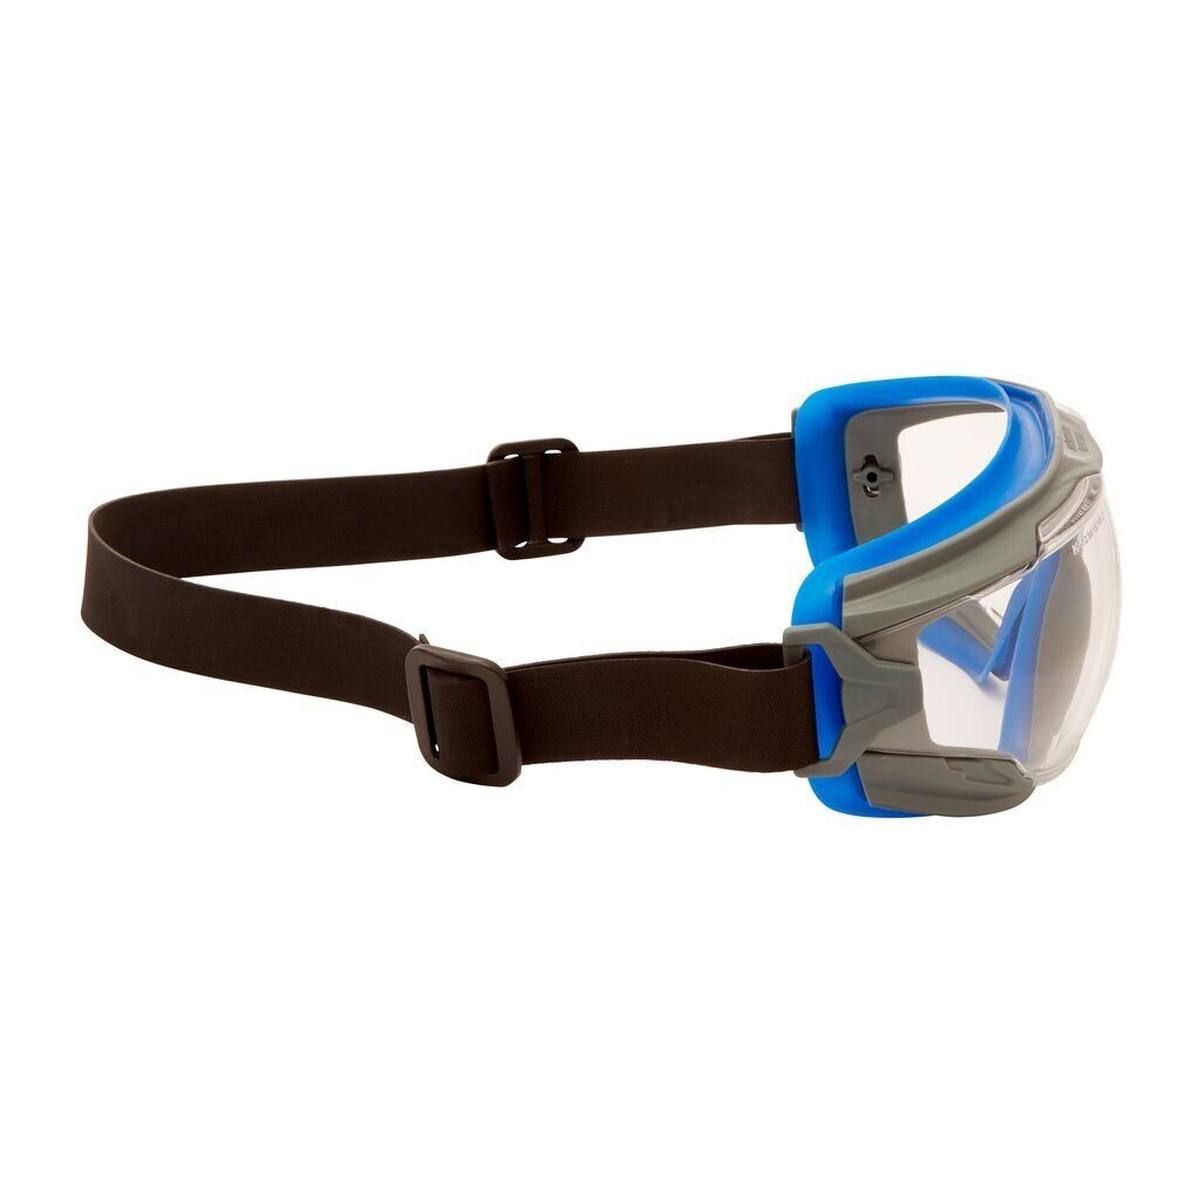 3M GoggleGear 500 Lunettes-masque GG501NSGAF-BLU, autoclavable, monture bleue-grise, bandeau néoprène noir, oculaires transparents